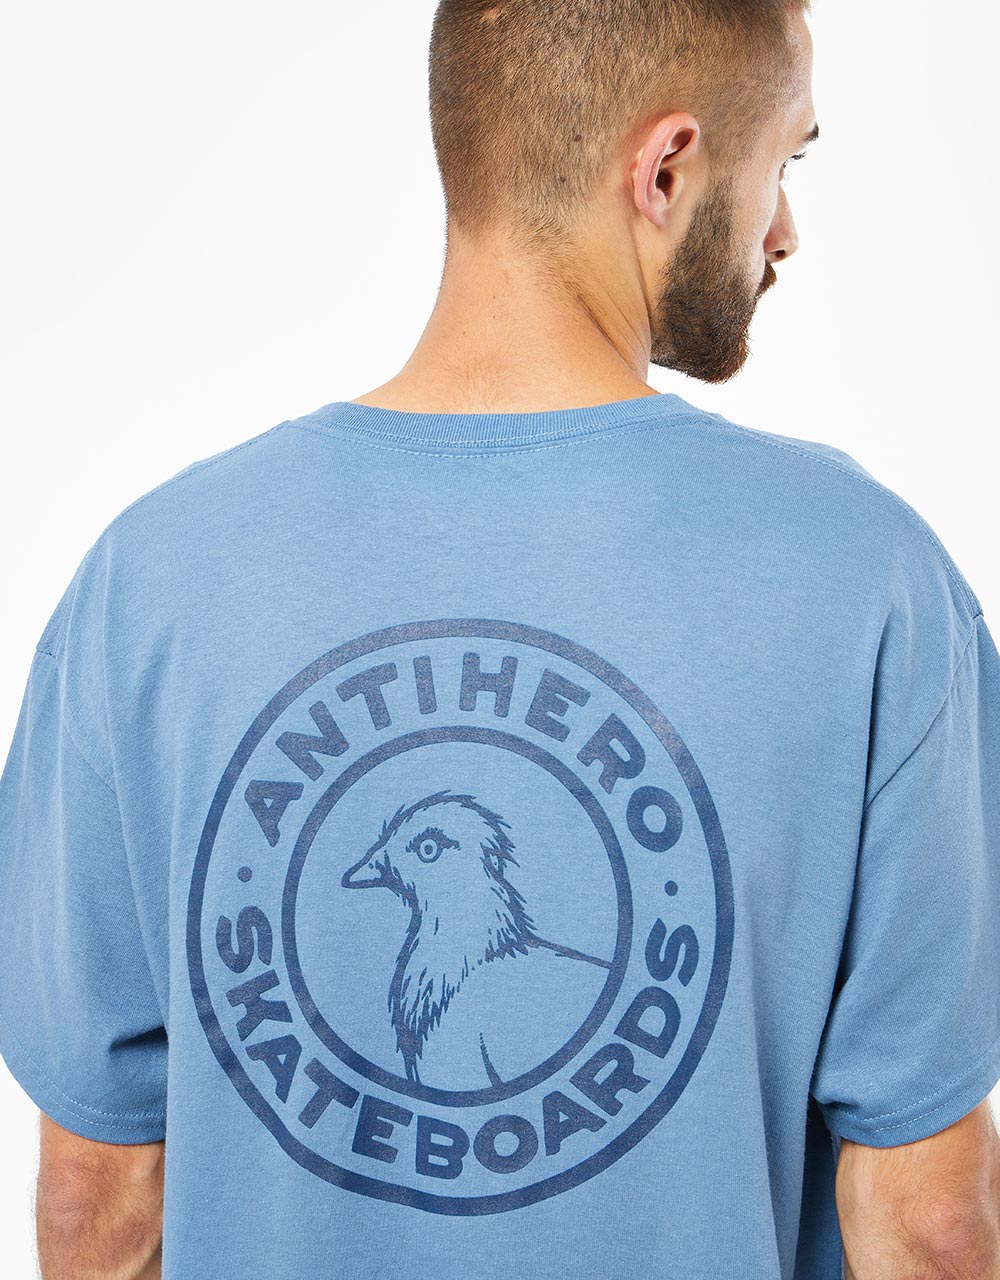 Anti Hero Basic Pigeon Round T-Shirt - Indigo Blue/Navy